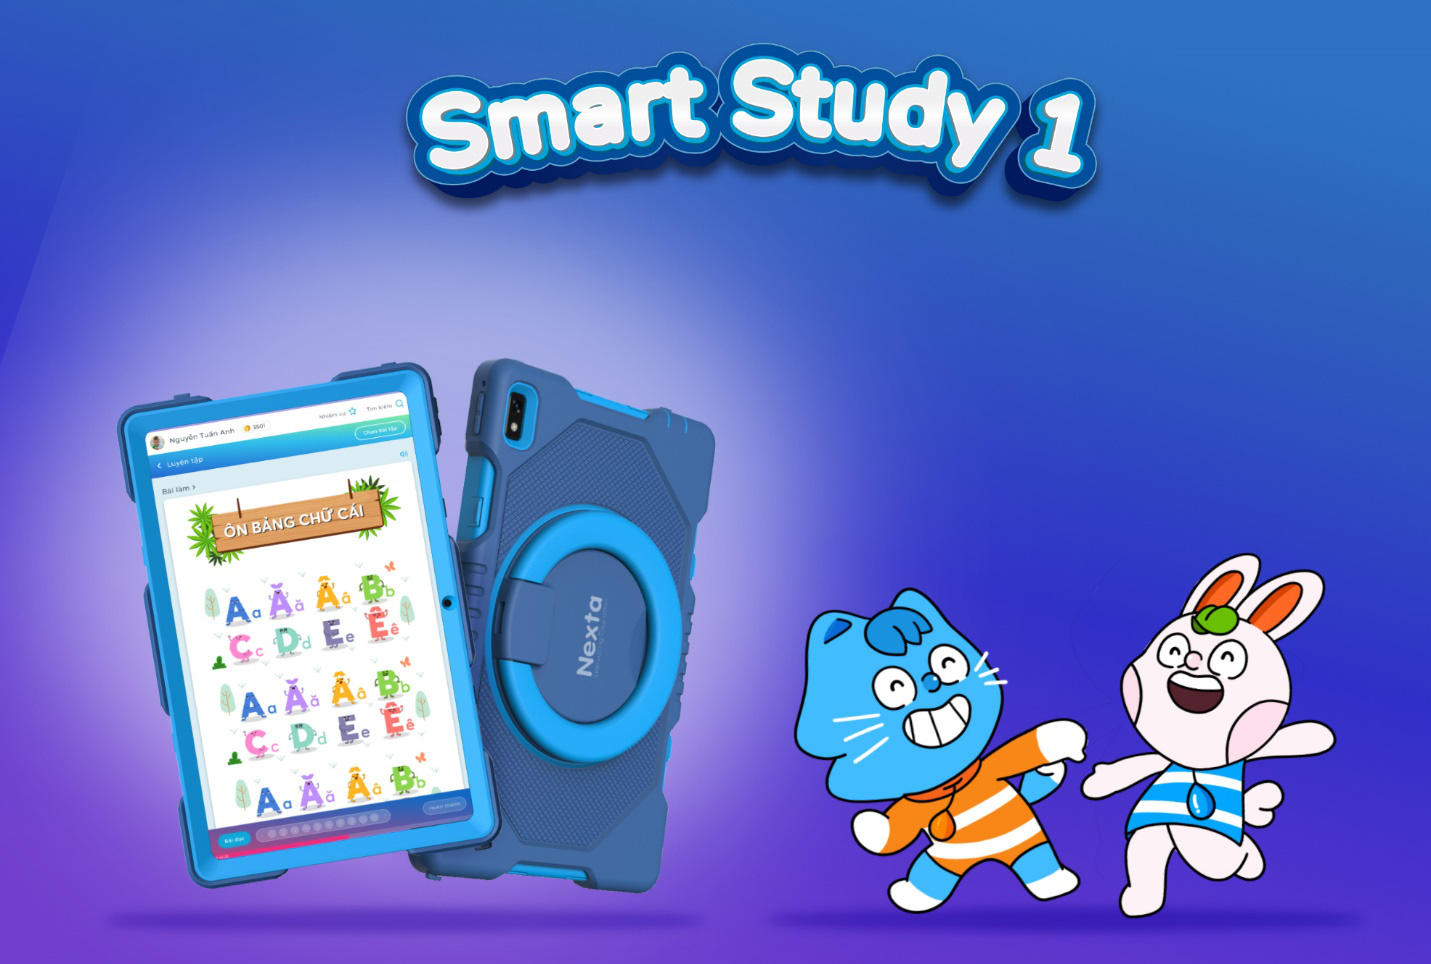 Mua máy tính bảng học tập Smart Study 1.0 tại FPT shop và các kênh online Nexta, nhận ngay học bổng lên tới 3 triệu đồng - Ảnh 3.